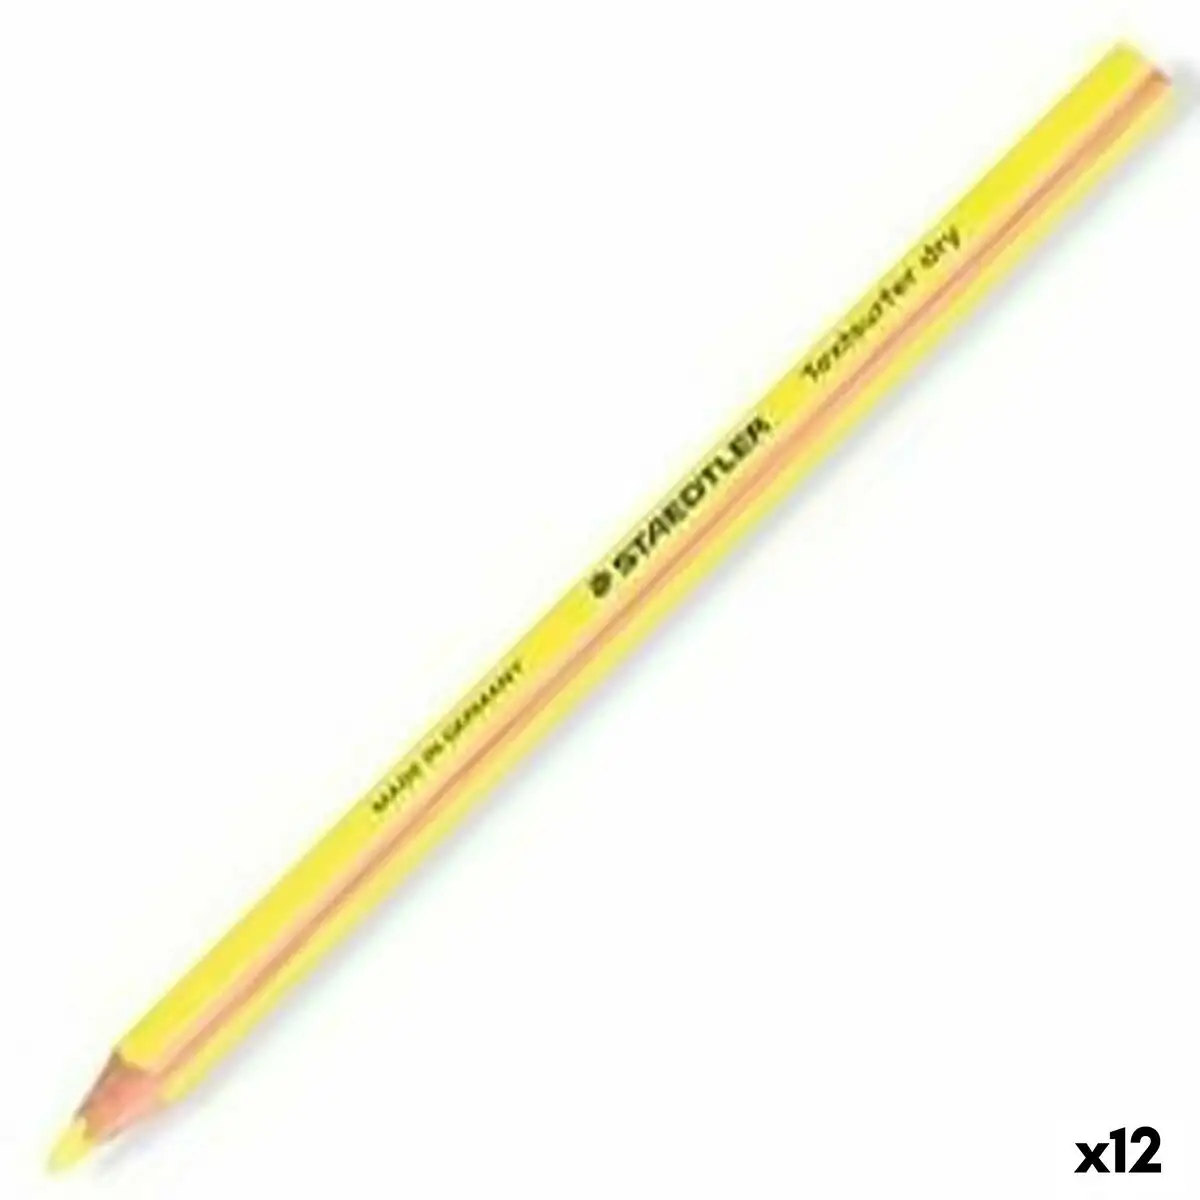 Marqueur fluorescent staedtler crayon jaune 12 unites _1739. DIAYTAR SENEGAL - L'Art de Vivre en Couleurs et en Styles. Parcourez notre sélection et trouvez des articles qui reflètent votre personnalité et votre goût pour la vie.